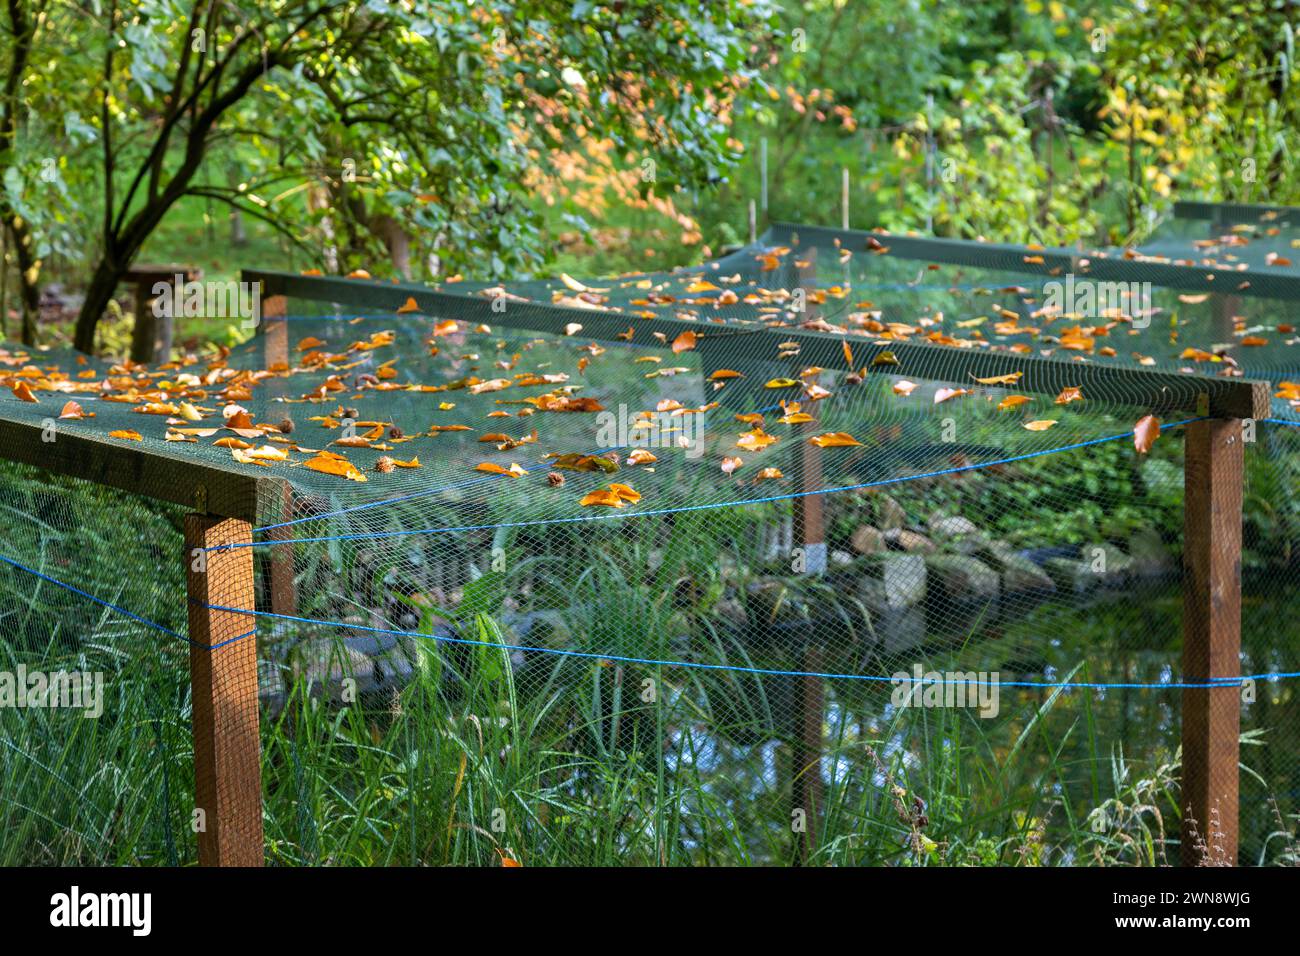 Netz über einen Teich gespannt. Schutz vor Vögeln und Laub Foto Stock